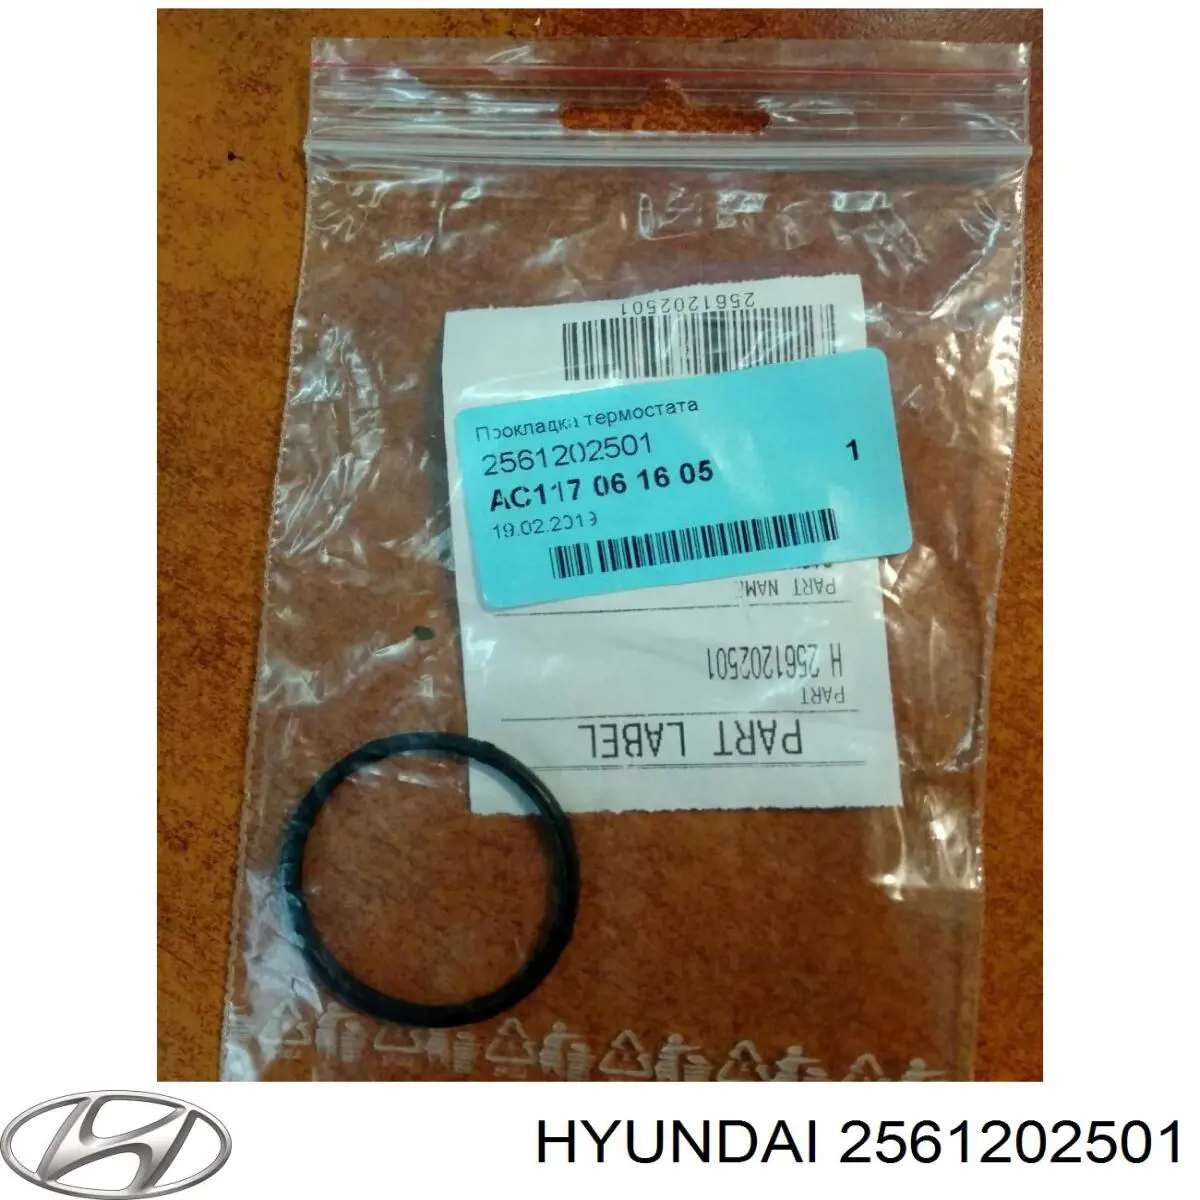 2561202501 Hyundai/Kia 